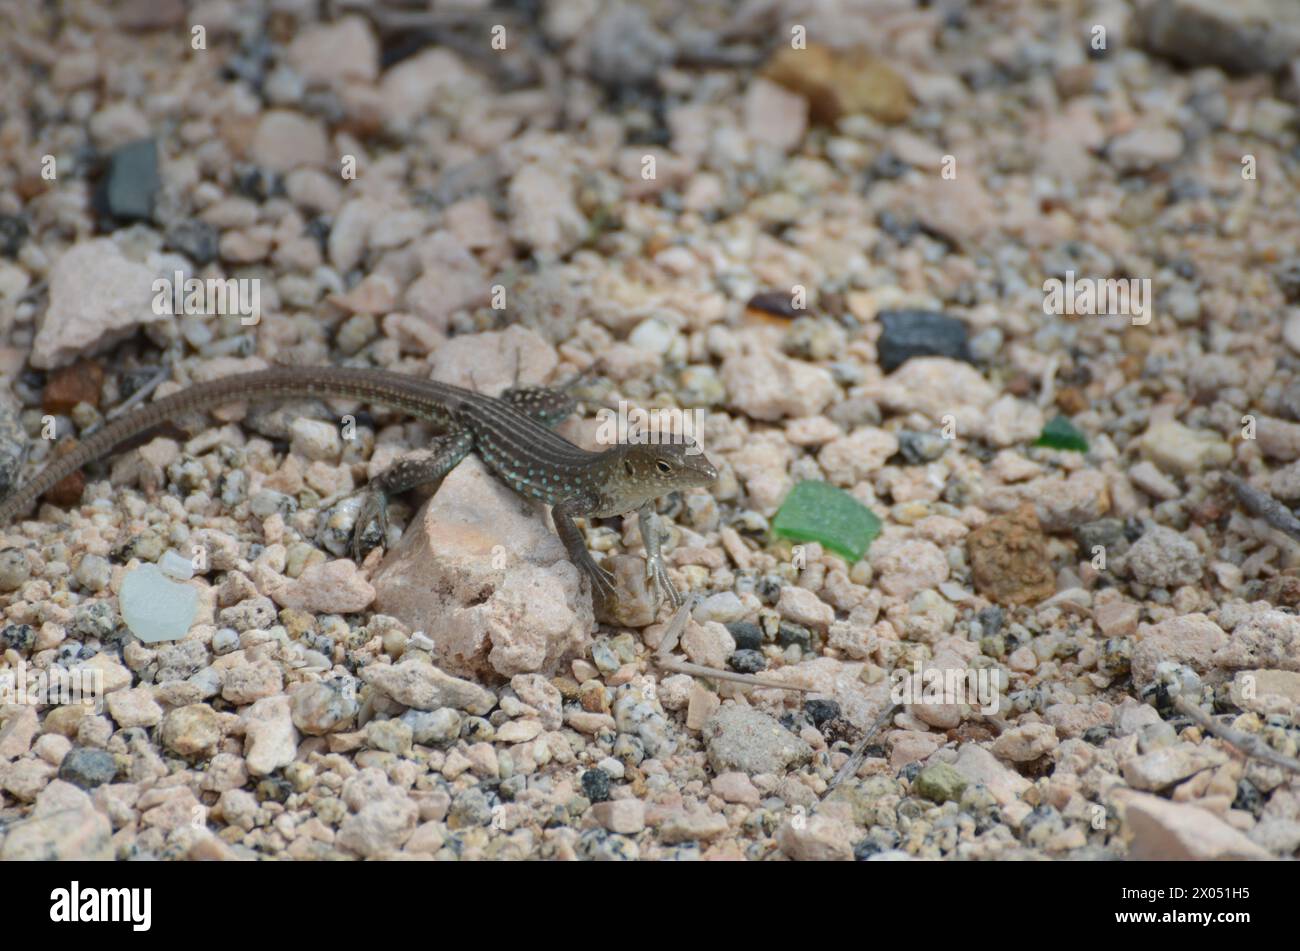 Un lagarto está en una roca en un desierto. El lagarto es pequeño y marrón. La roca es grande y gris Foto de stock